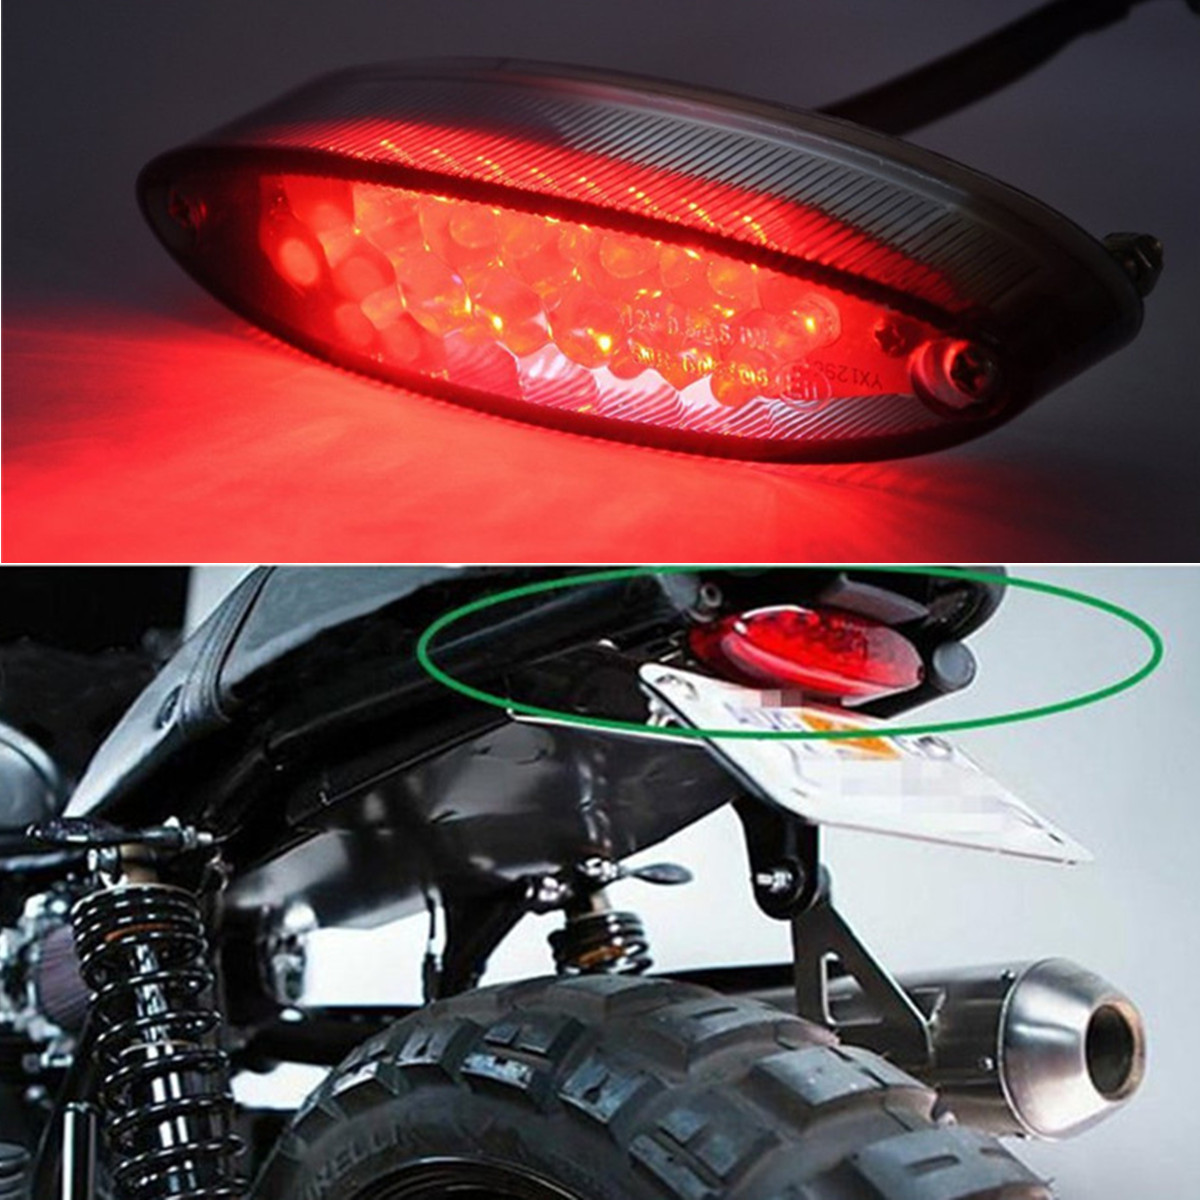 12V 21-LED Motorcycle ATV License Number Plate Lamp Tail Brake Light Red & White